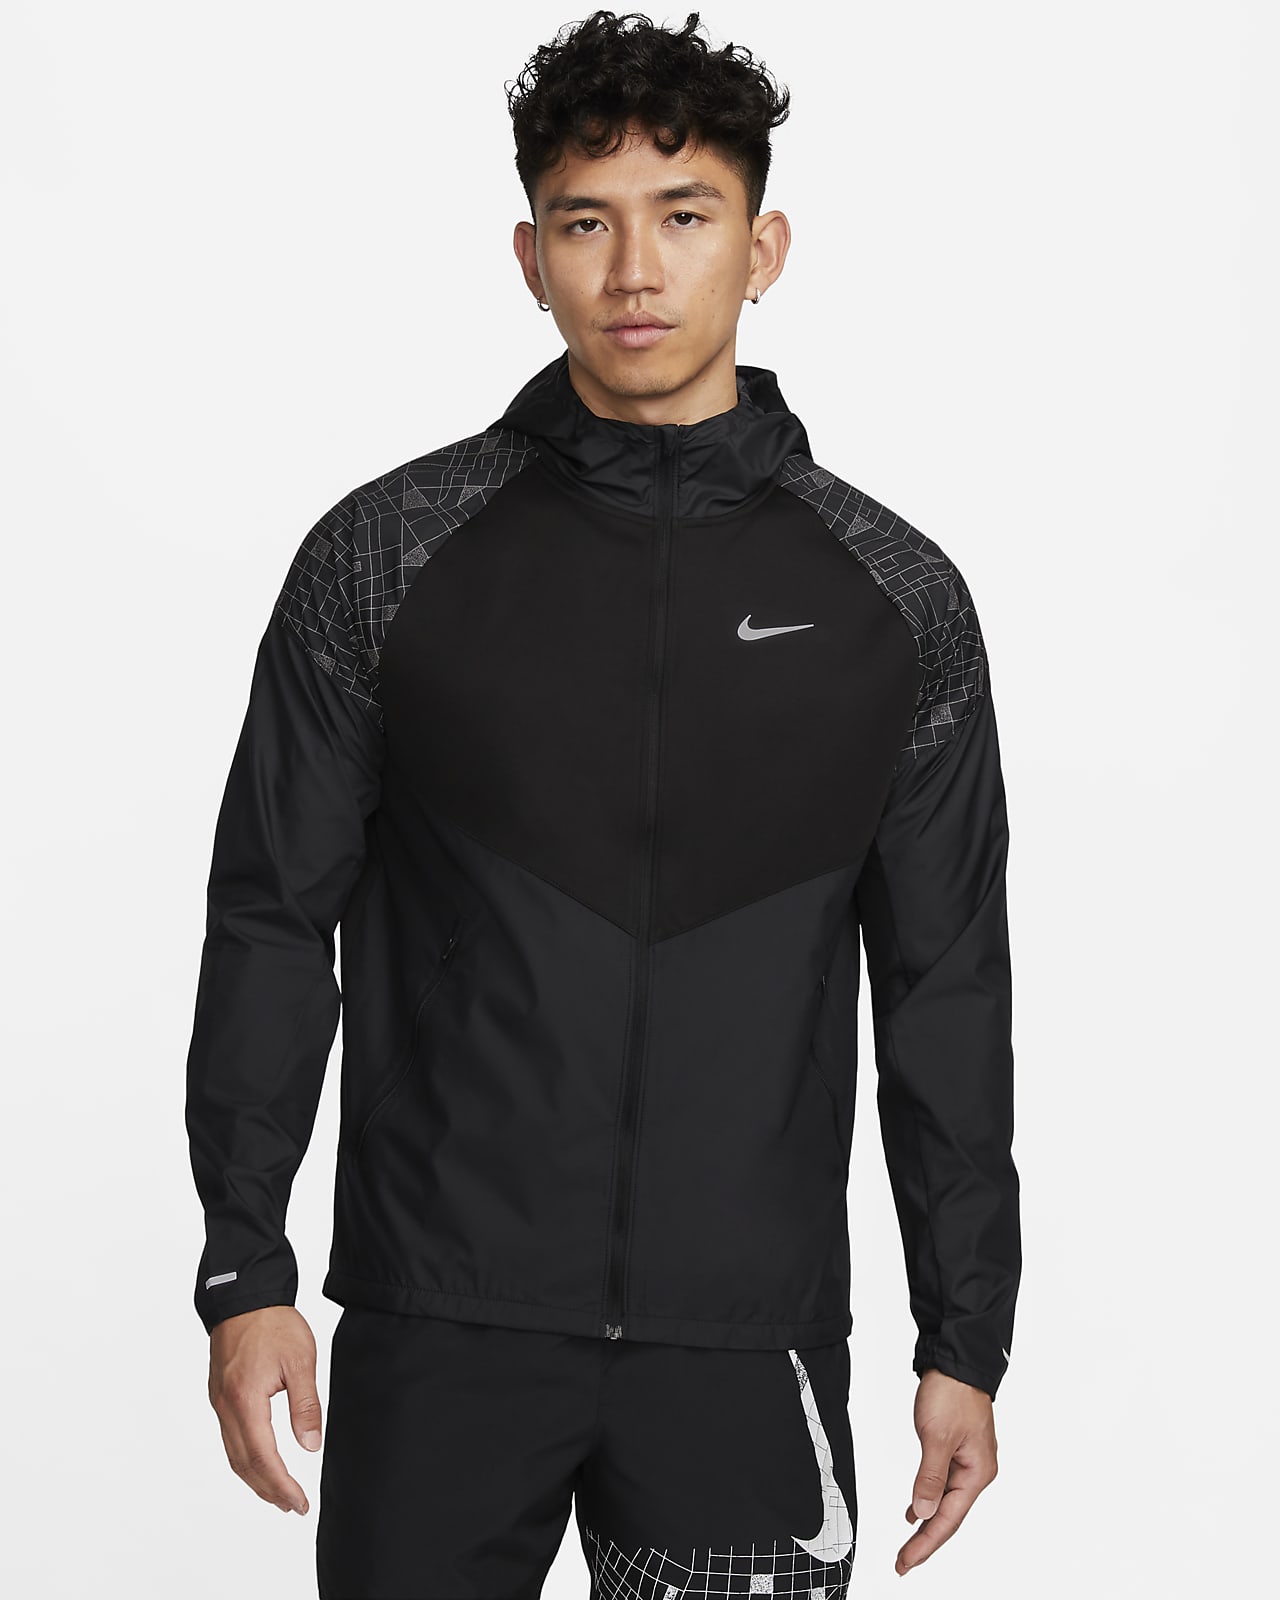 Nike Run Division Miler Men's Flash Running Jacket